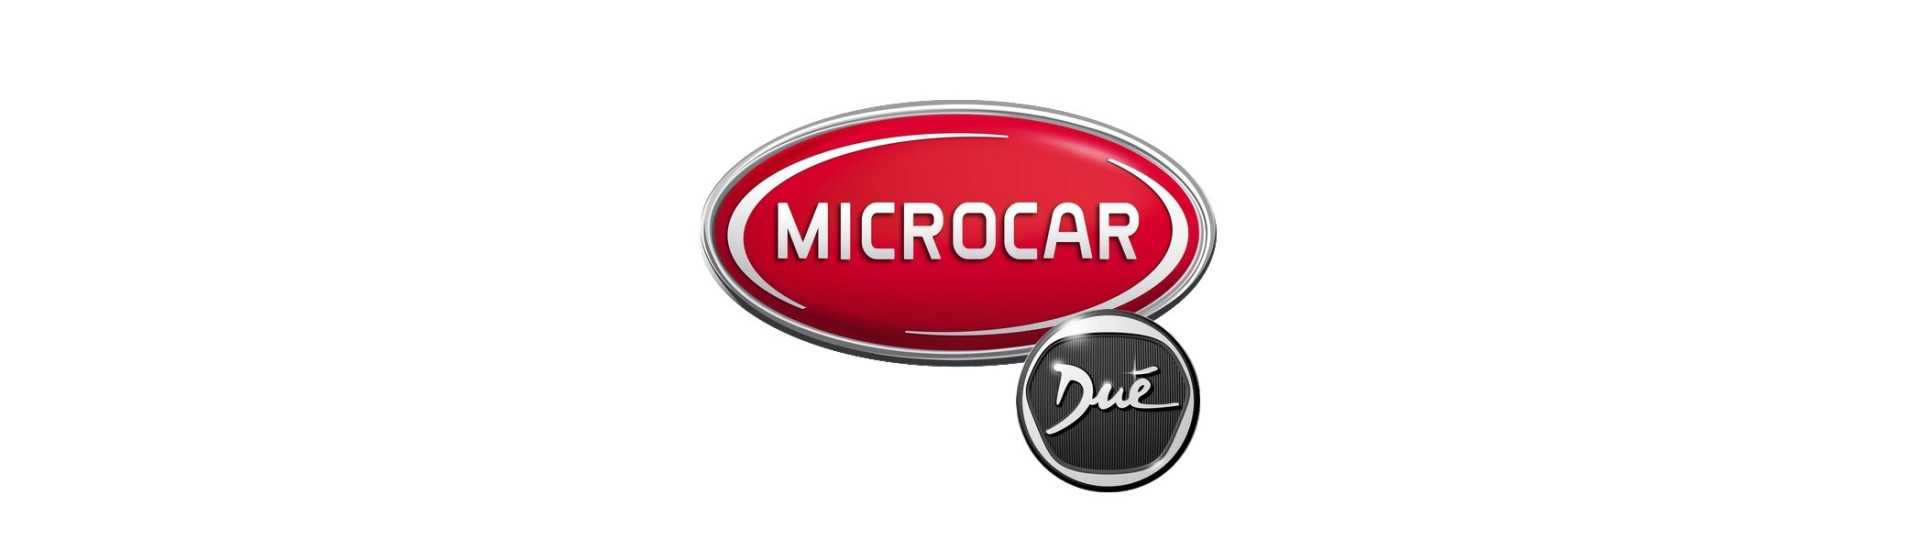 Wheel Pack al miglior prezzo per auto senza patente Microcar Dué